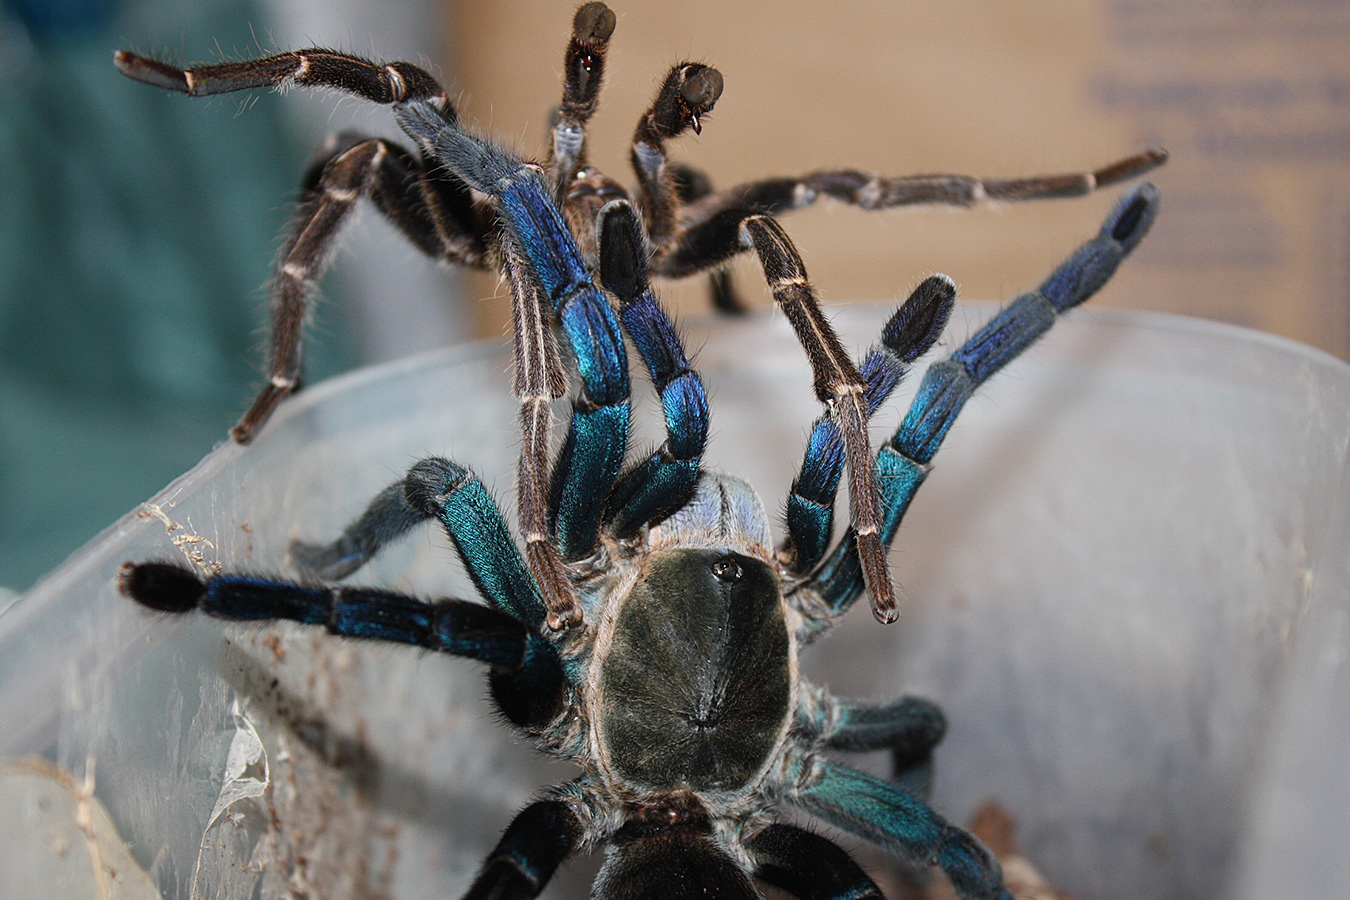 Cobalt Blue Tarantula (Cyriopagopus lividus) for Sale